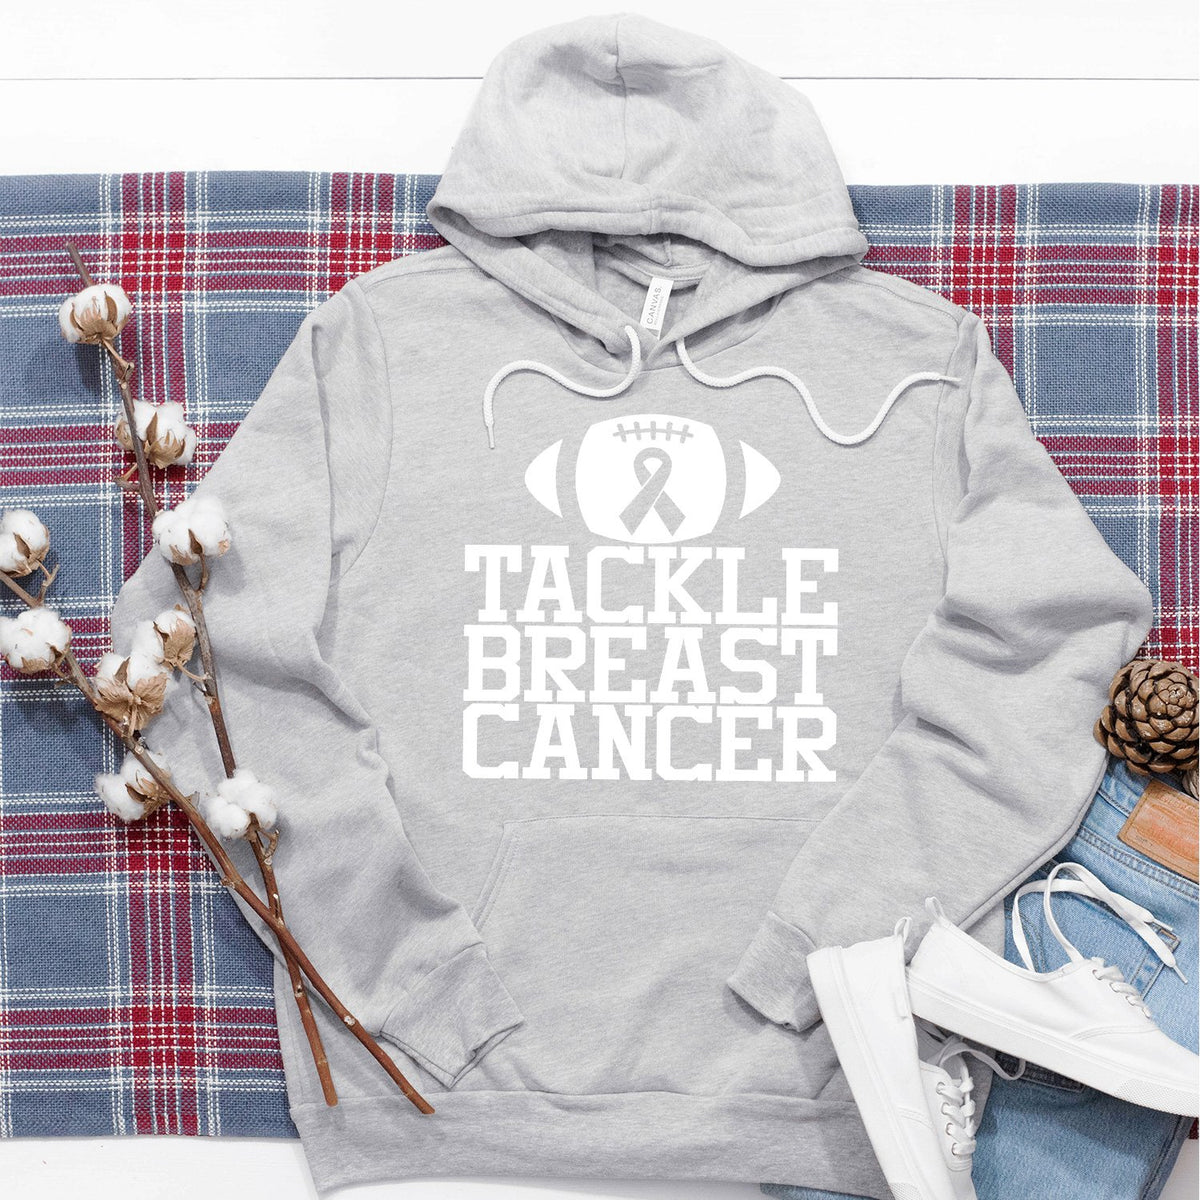 Tackle Breast Cancer - Hoodie Sweatshirt